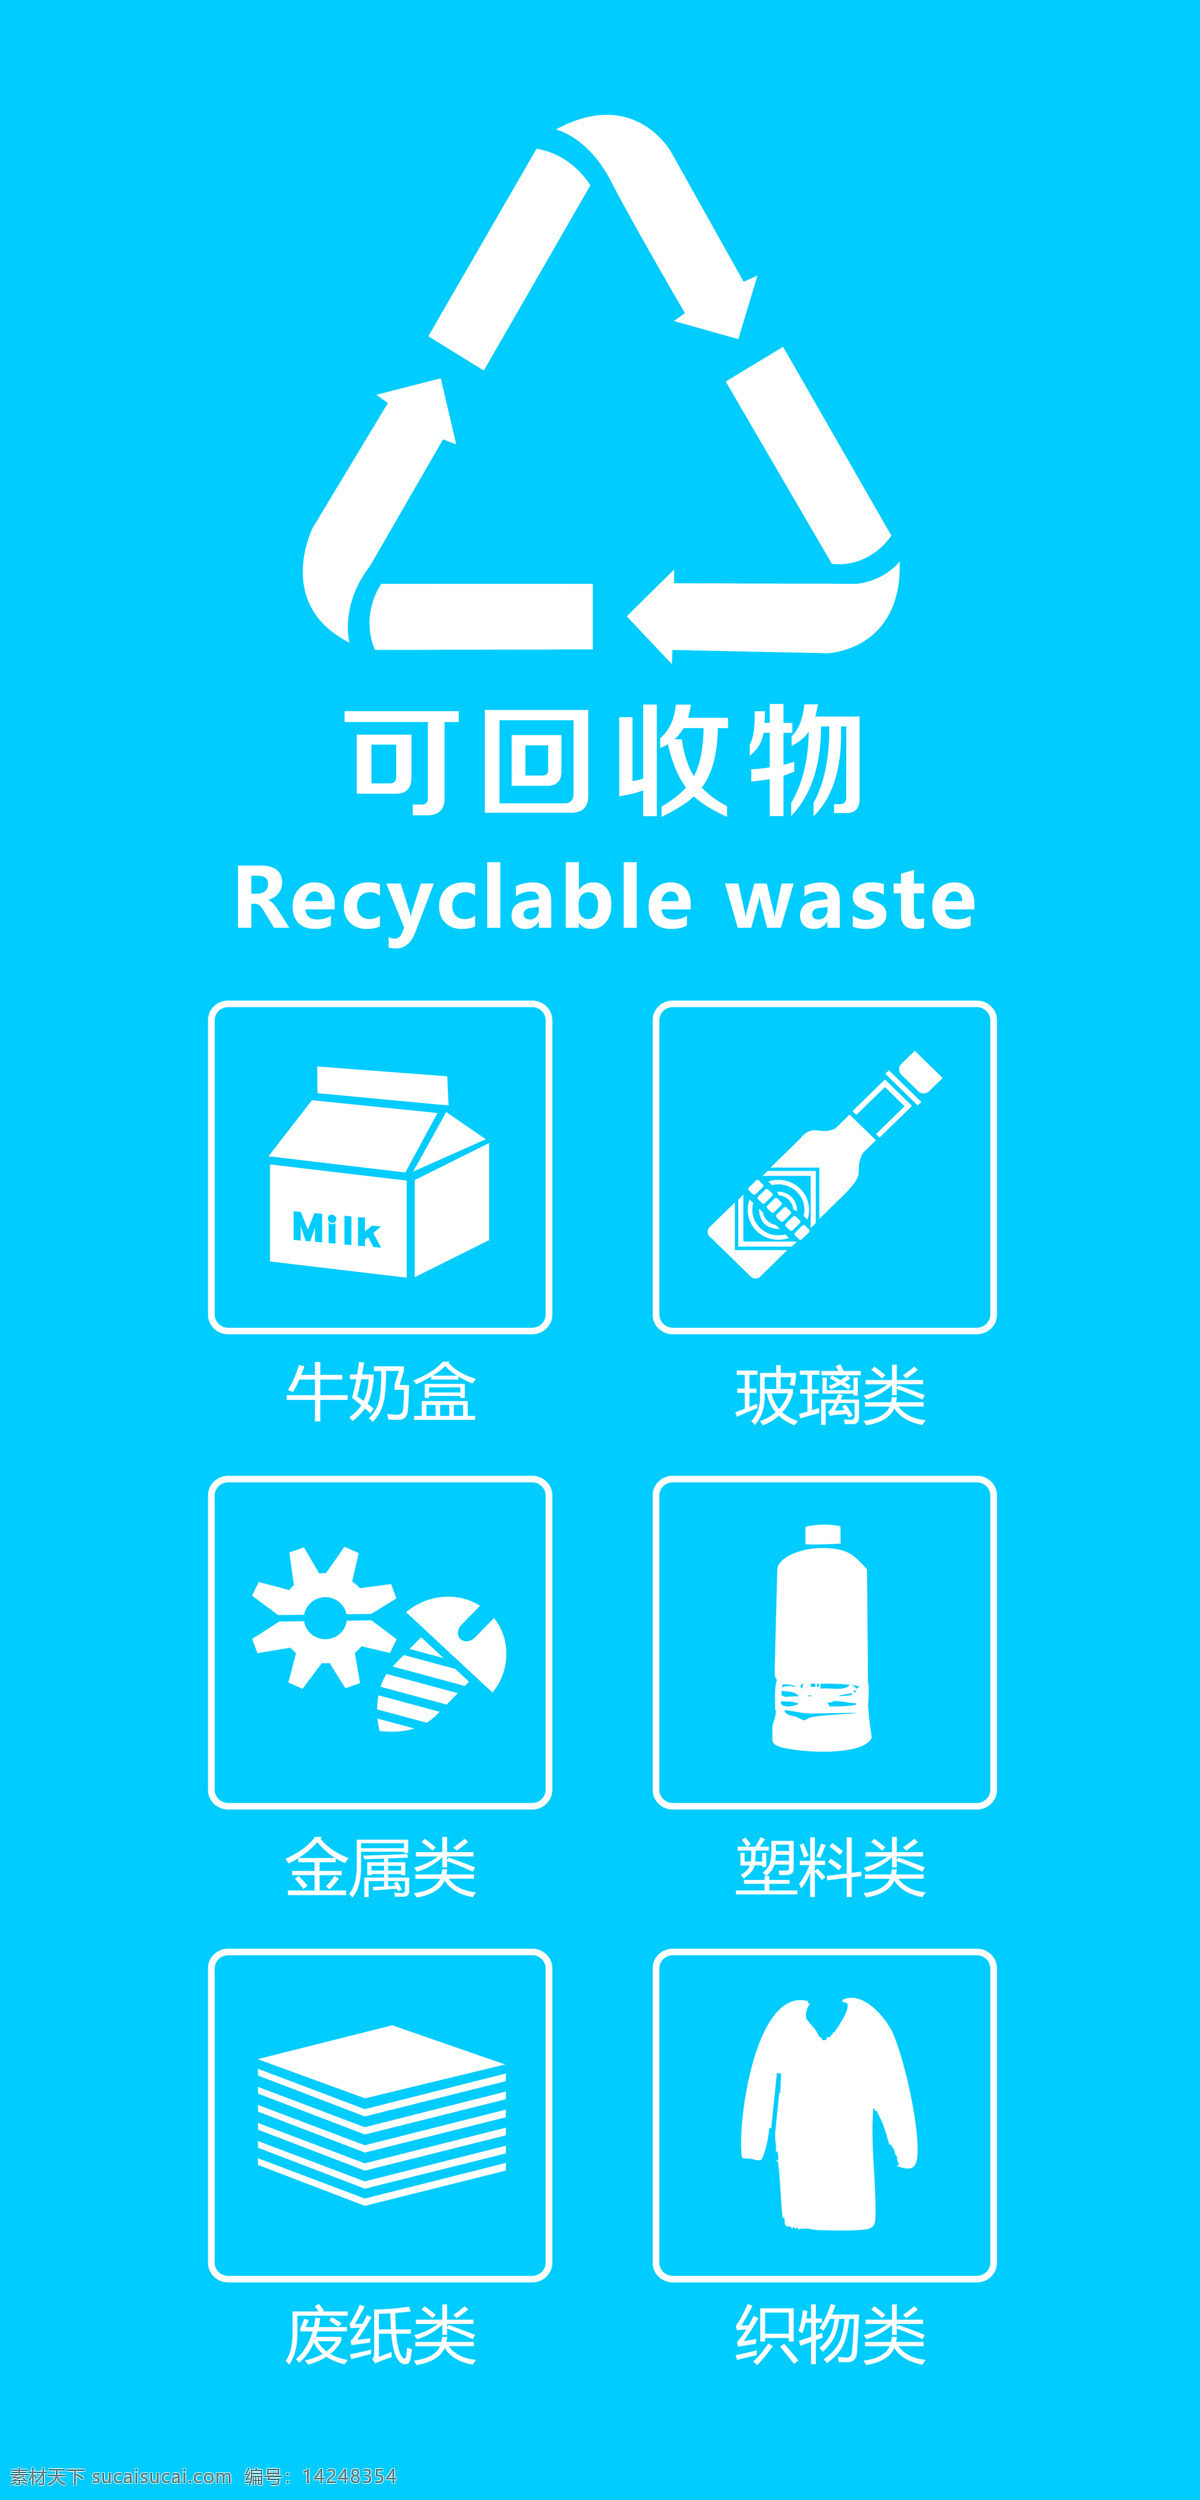 垃圾分类图片 标准 垃圾桶分类 厨余 可回收 四分类 标贴 招贴设计